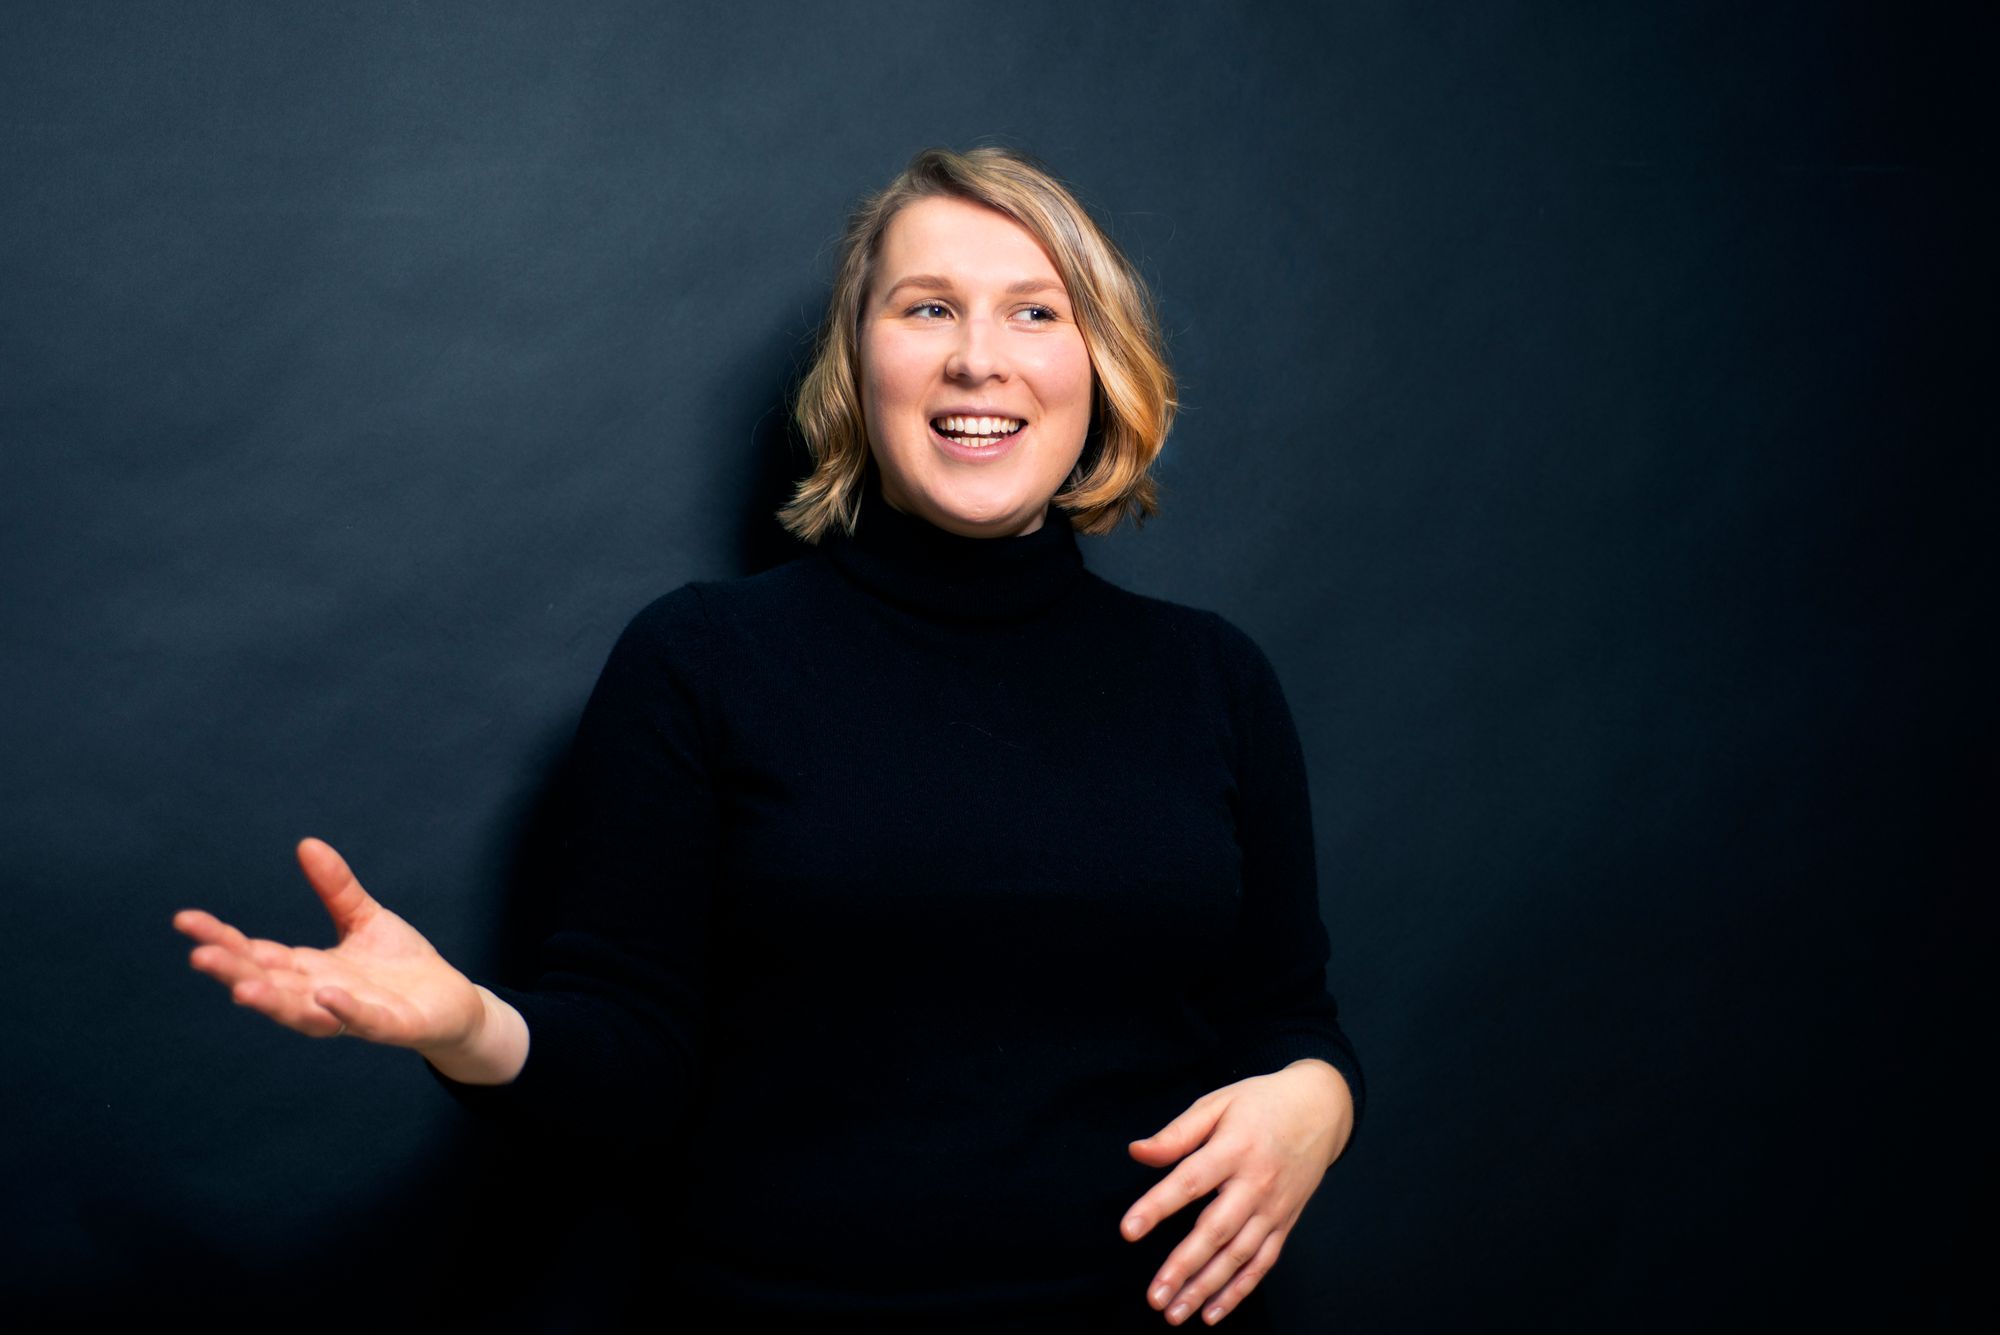 EIn Portraitfoto von Denise Loop im schwarzen Rollkragenpullover. Sie gestikuliert im Gespräch mit ihren Händen.